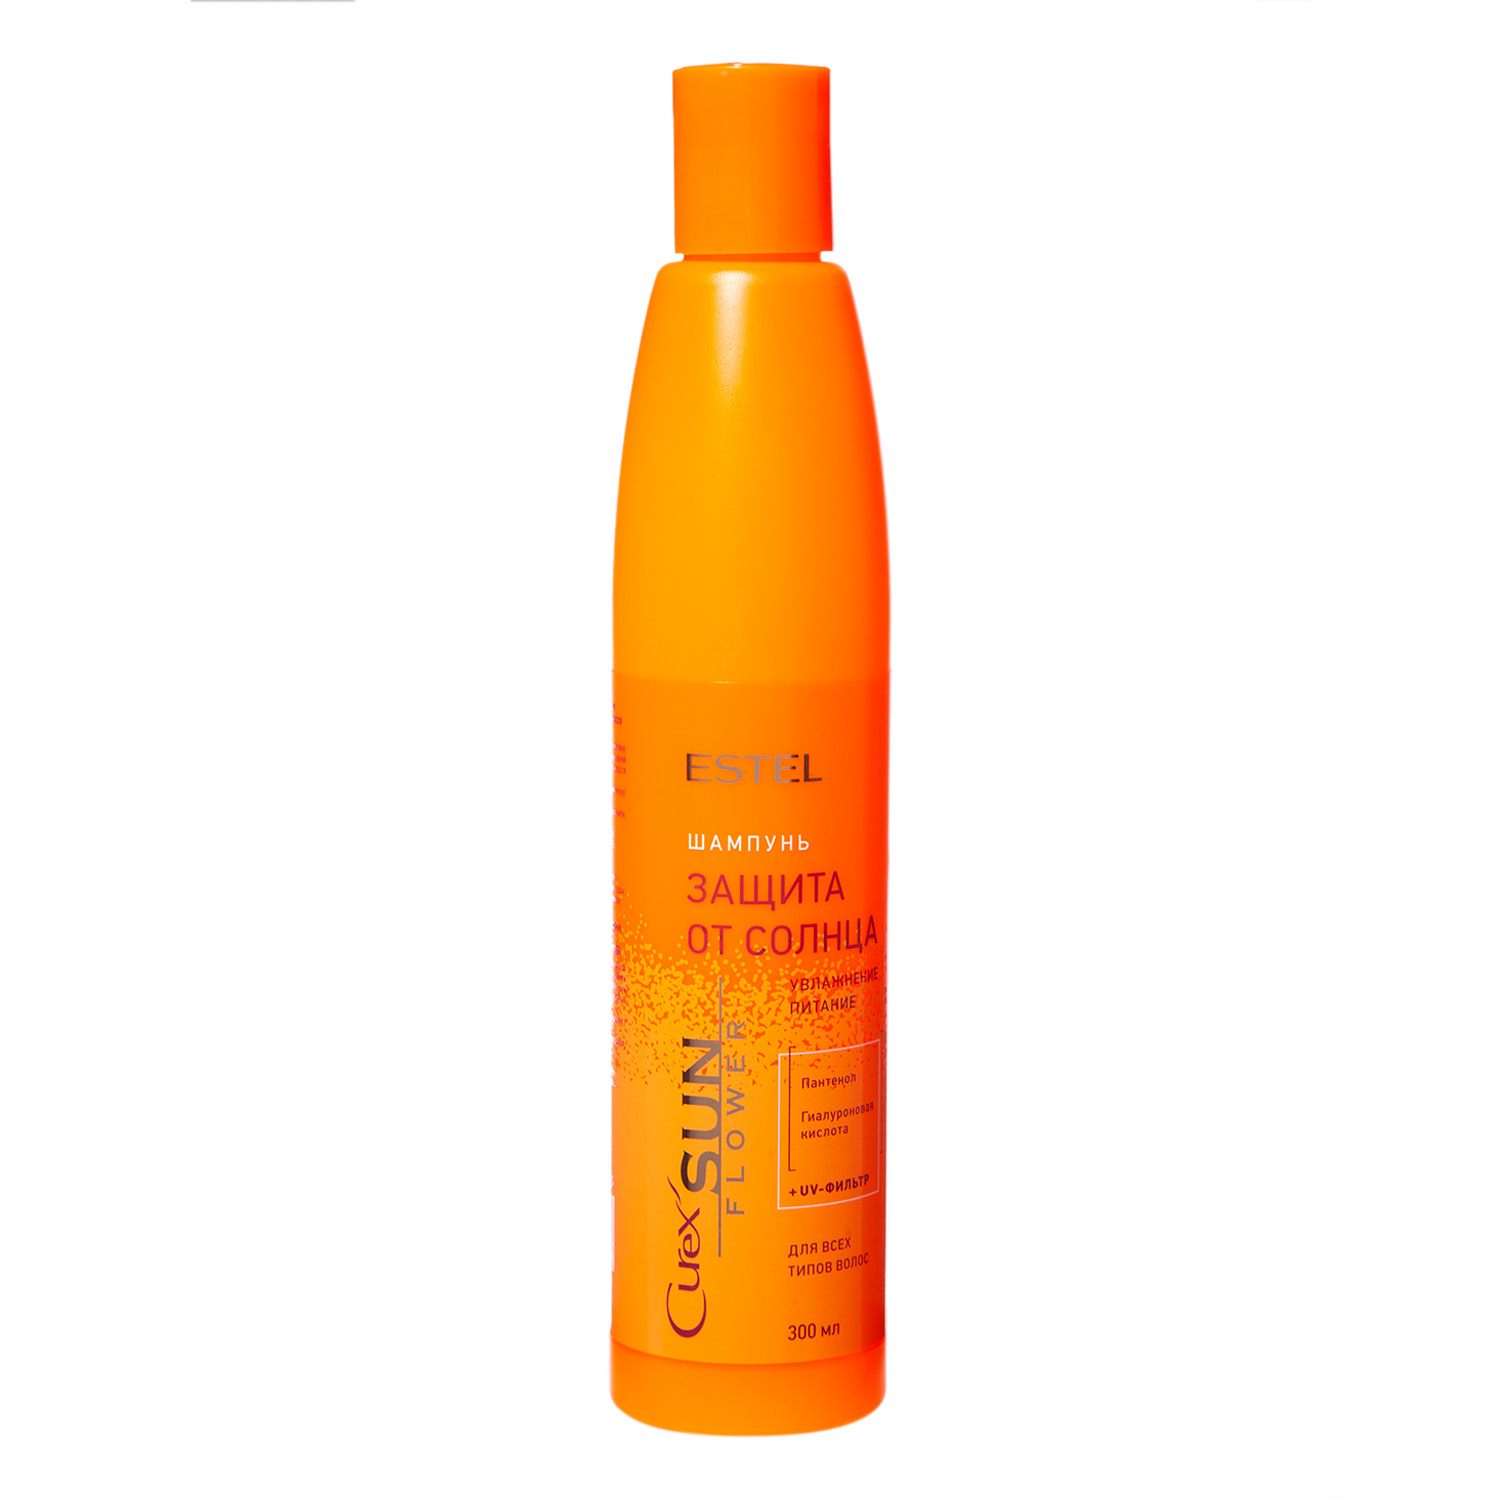 Estel Шампунь для всех типов волос Защита от солнца Sun Flower, 300 мл (Estel, Curex)